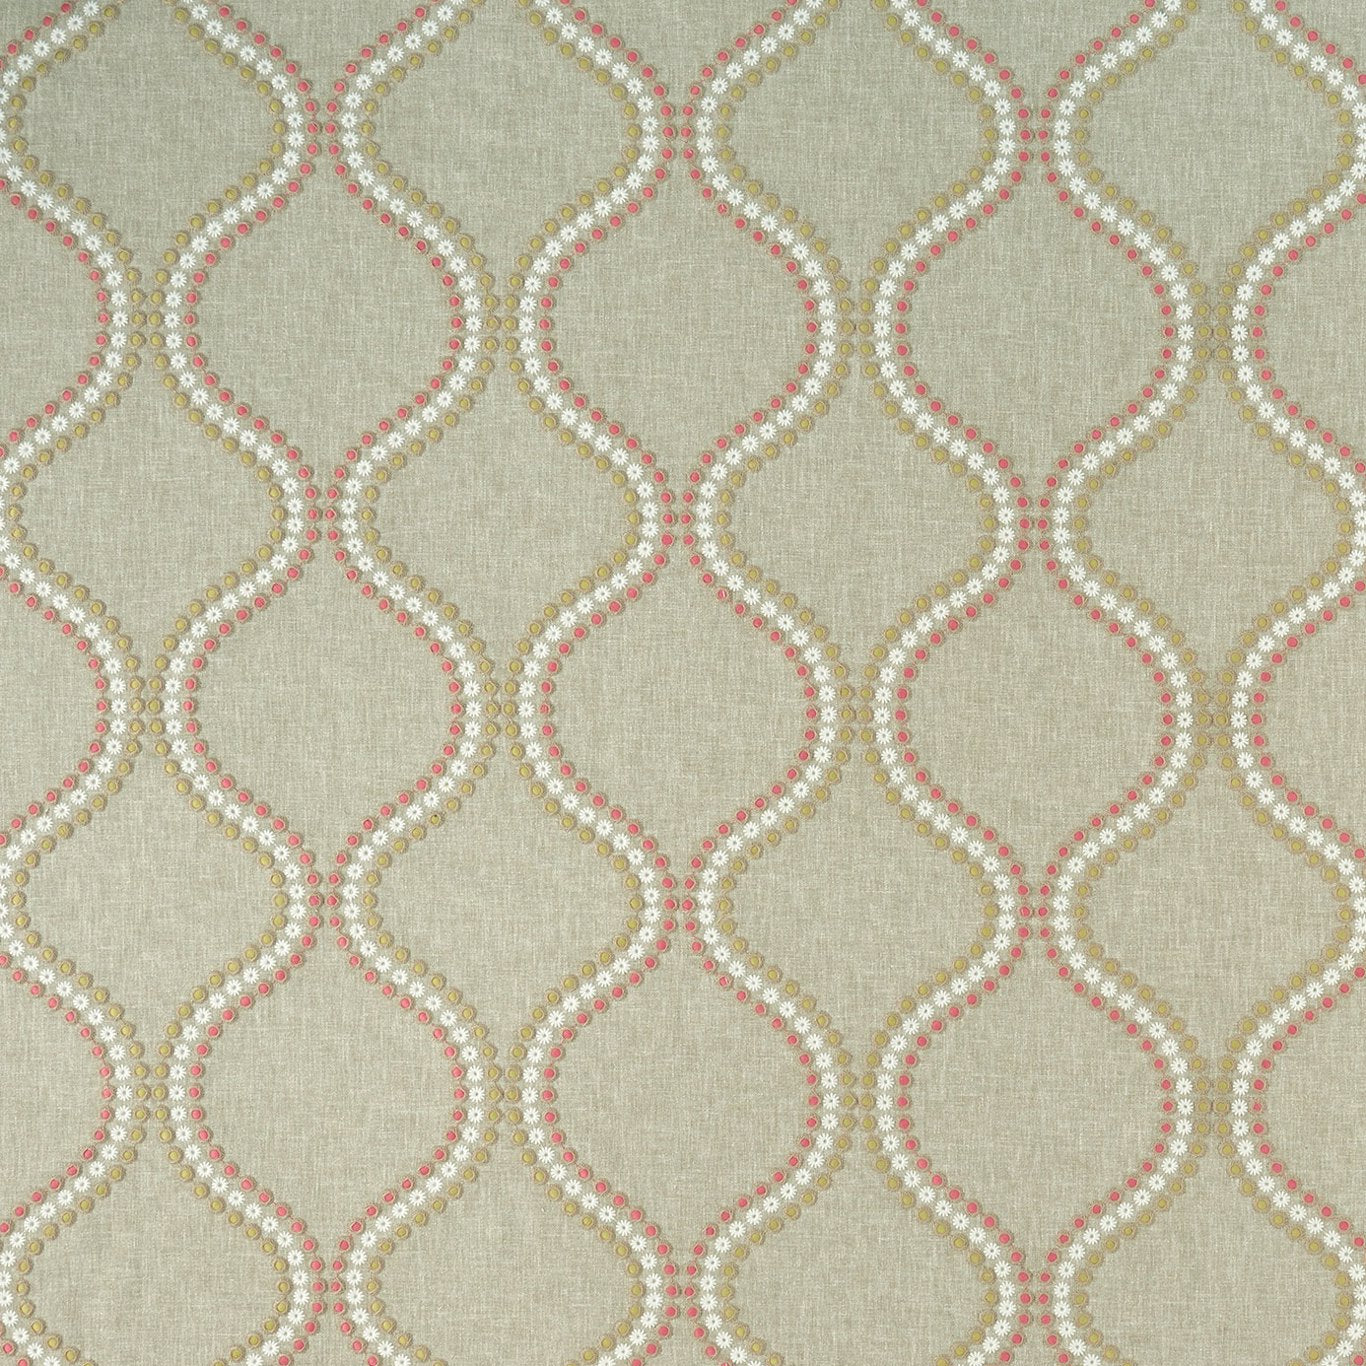 Layton Pink/Apple Fabric by Clarke & Clarke